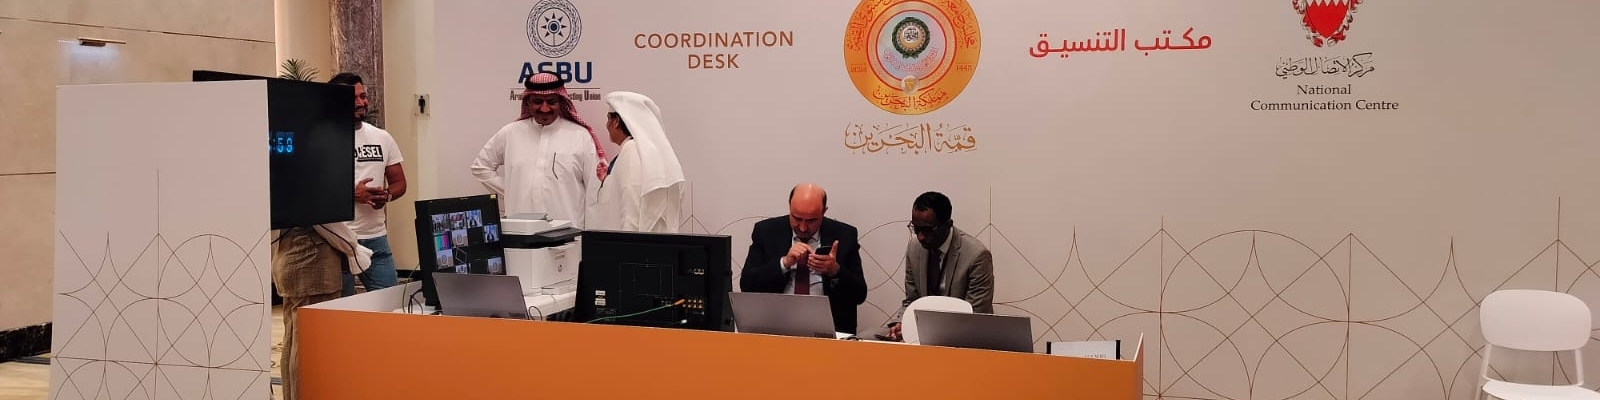 اتحاد إذاعات الدول العربية يغطي لهيئاته الأعضاء القمة العربية الأخيرة بمملكة البحرين 